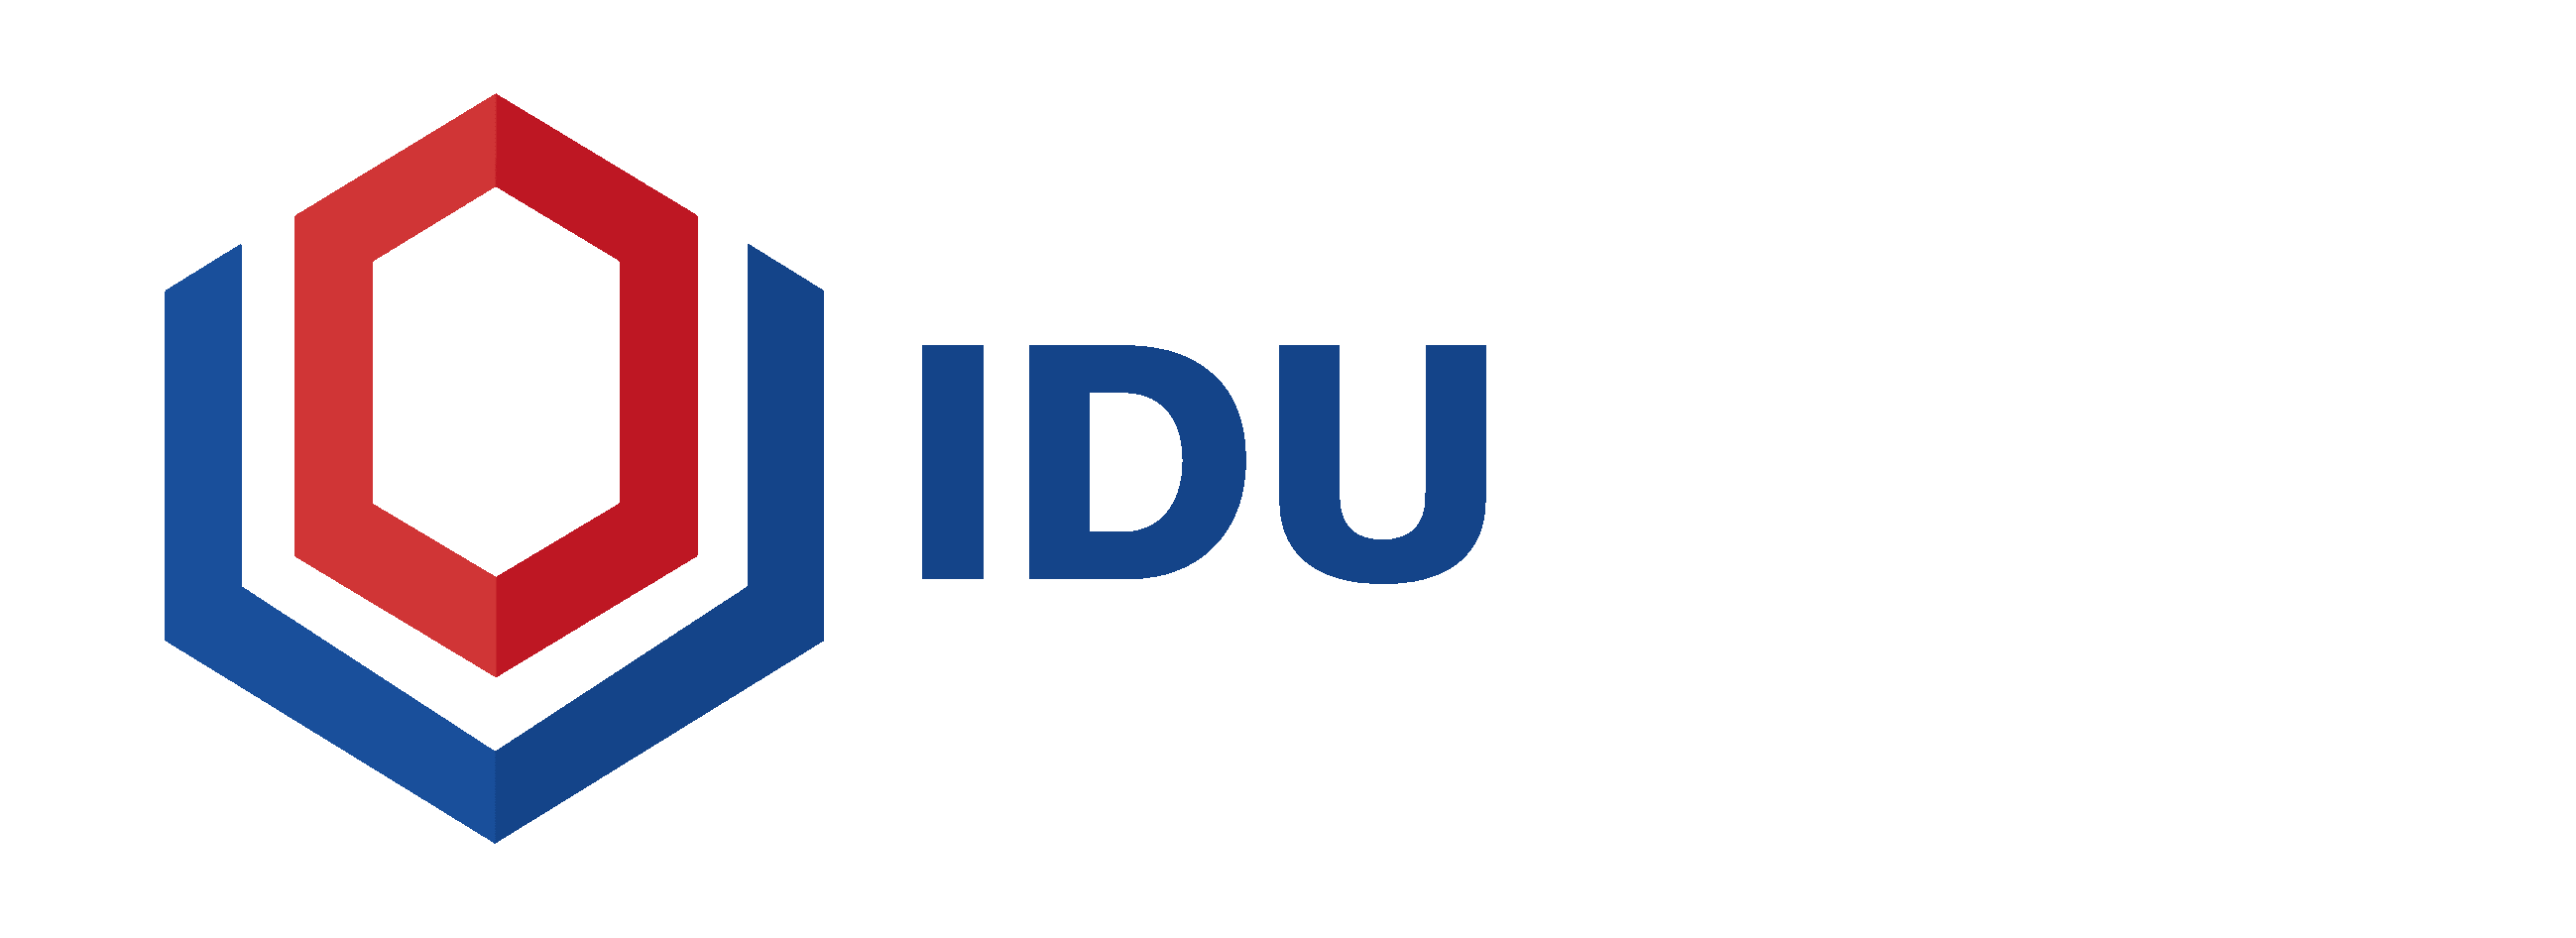 About IDU, Inc.